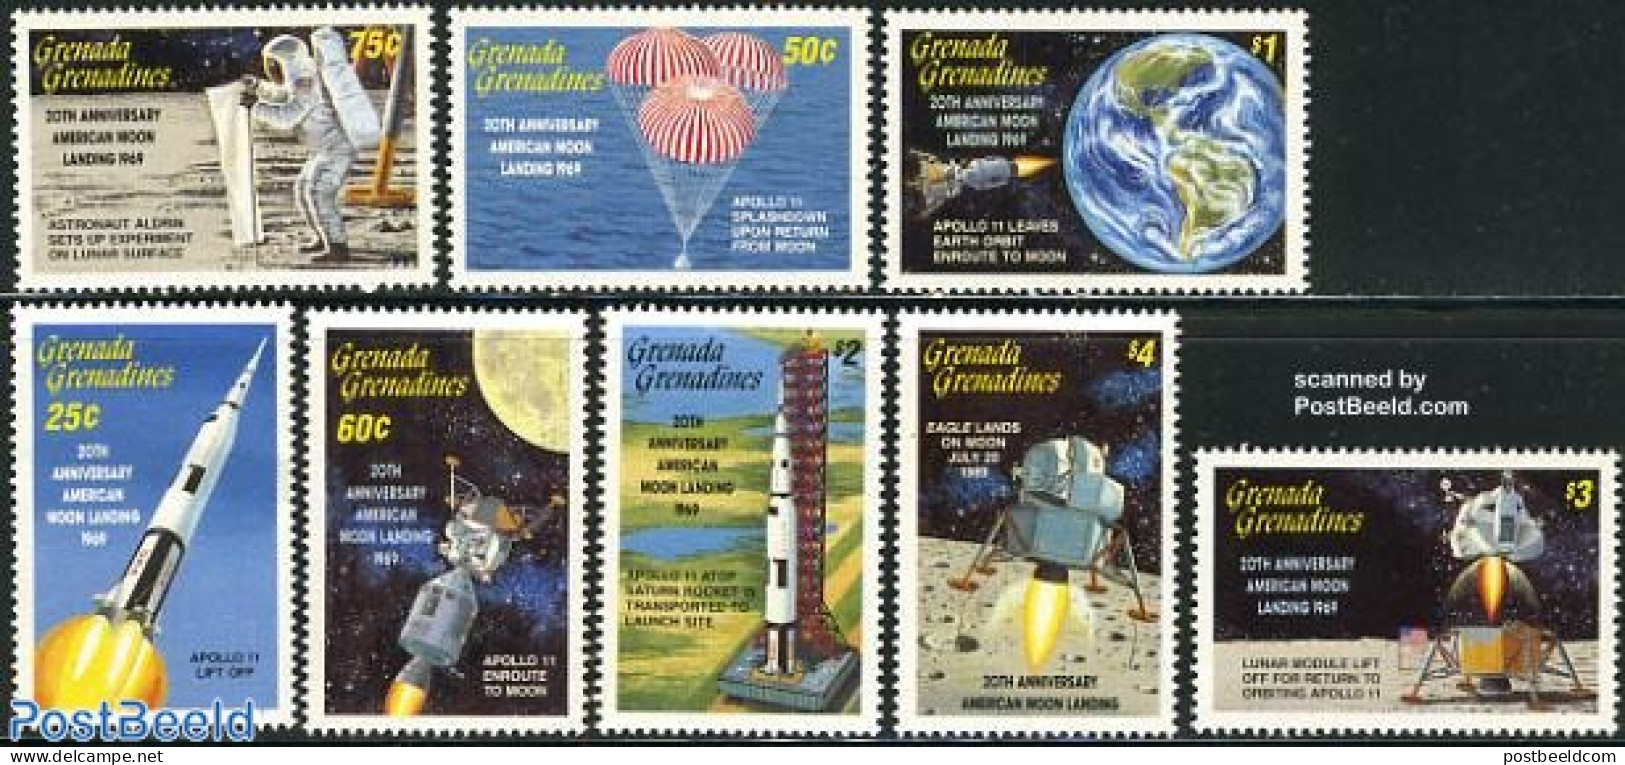 Grenada Grenadines 1989 Moonlanding Anniversary 8v, Mint NH, Transport - Space Exploration - Grenada (1974-...)